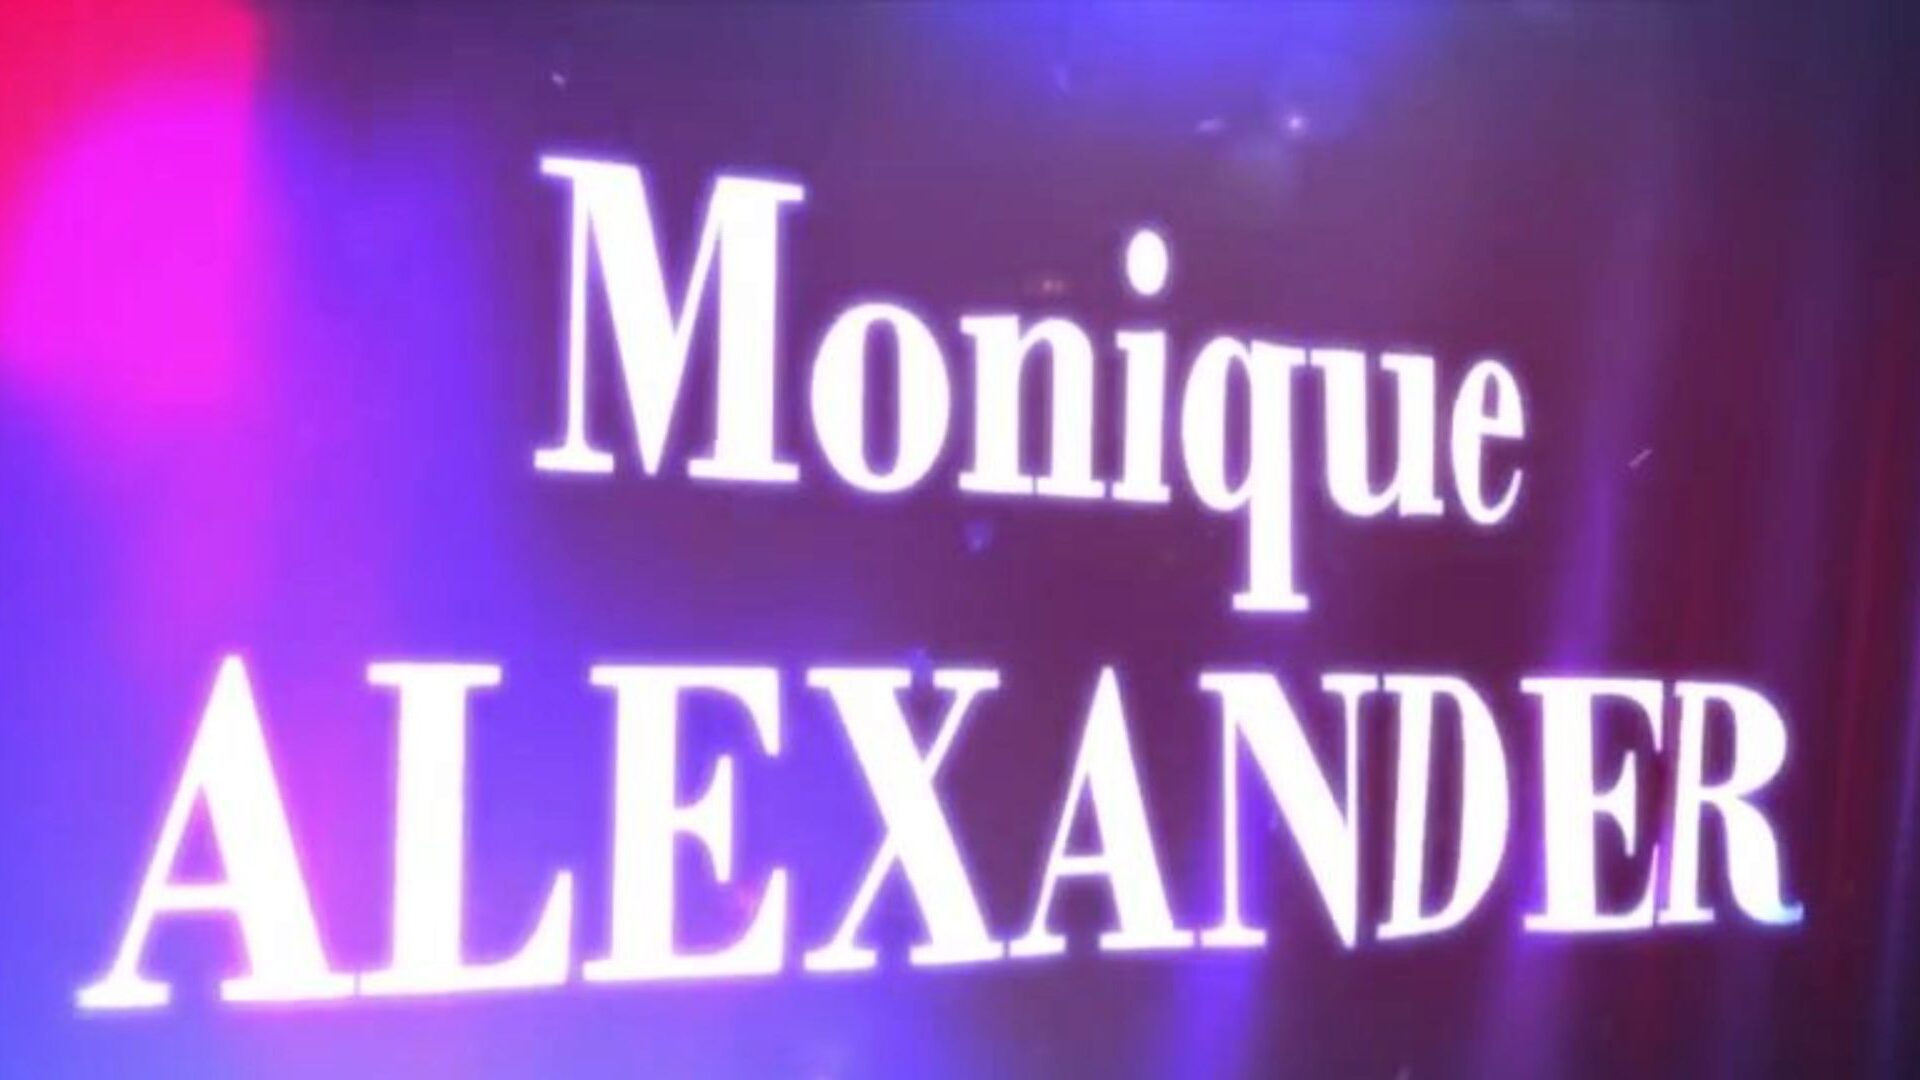 brazzers - ekte konehistorier - hva tar hennes så lange scene med monique alexander og xander i hovedrollene